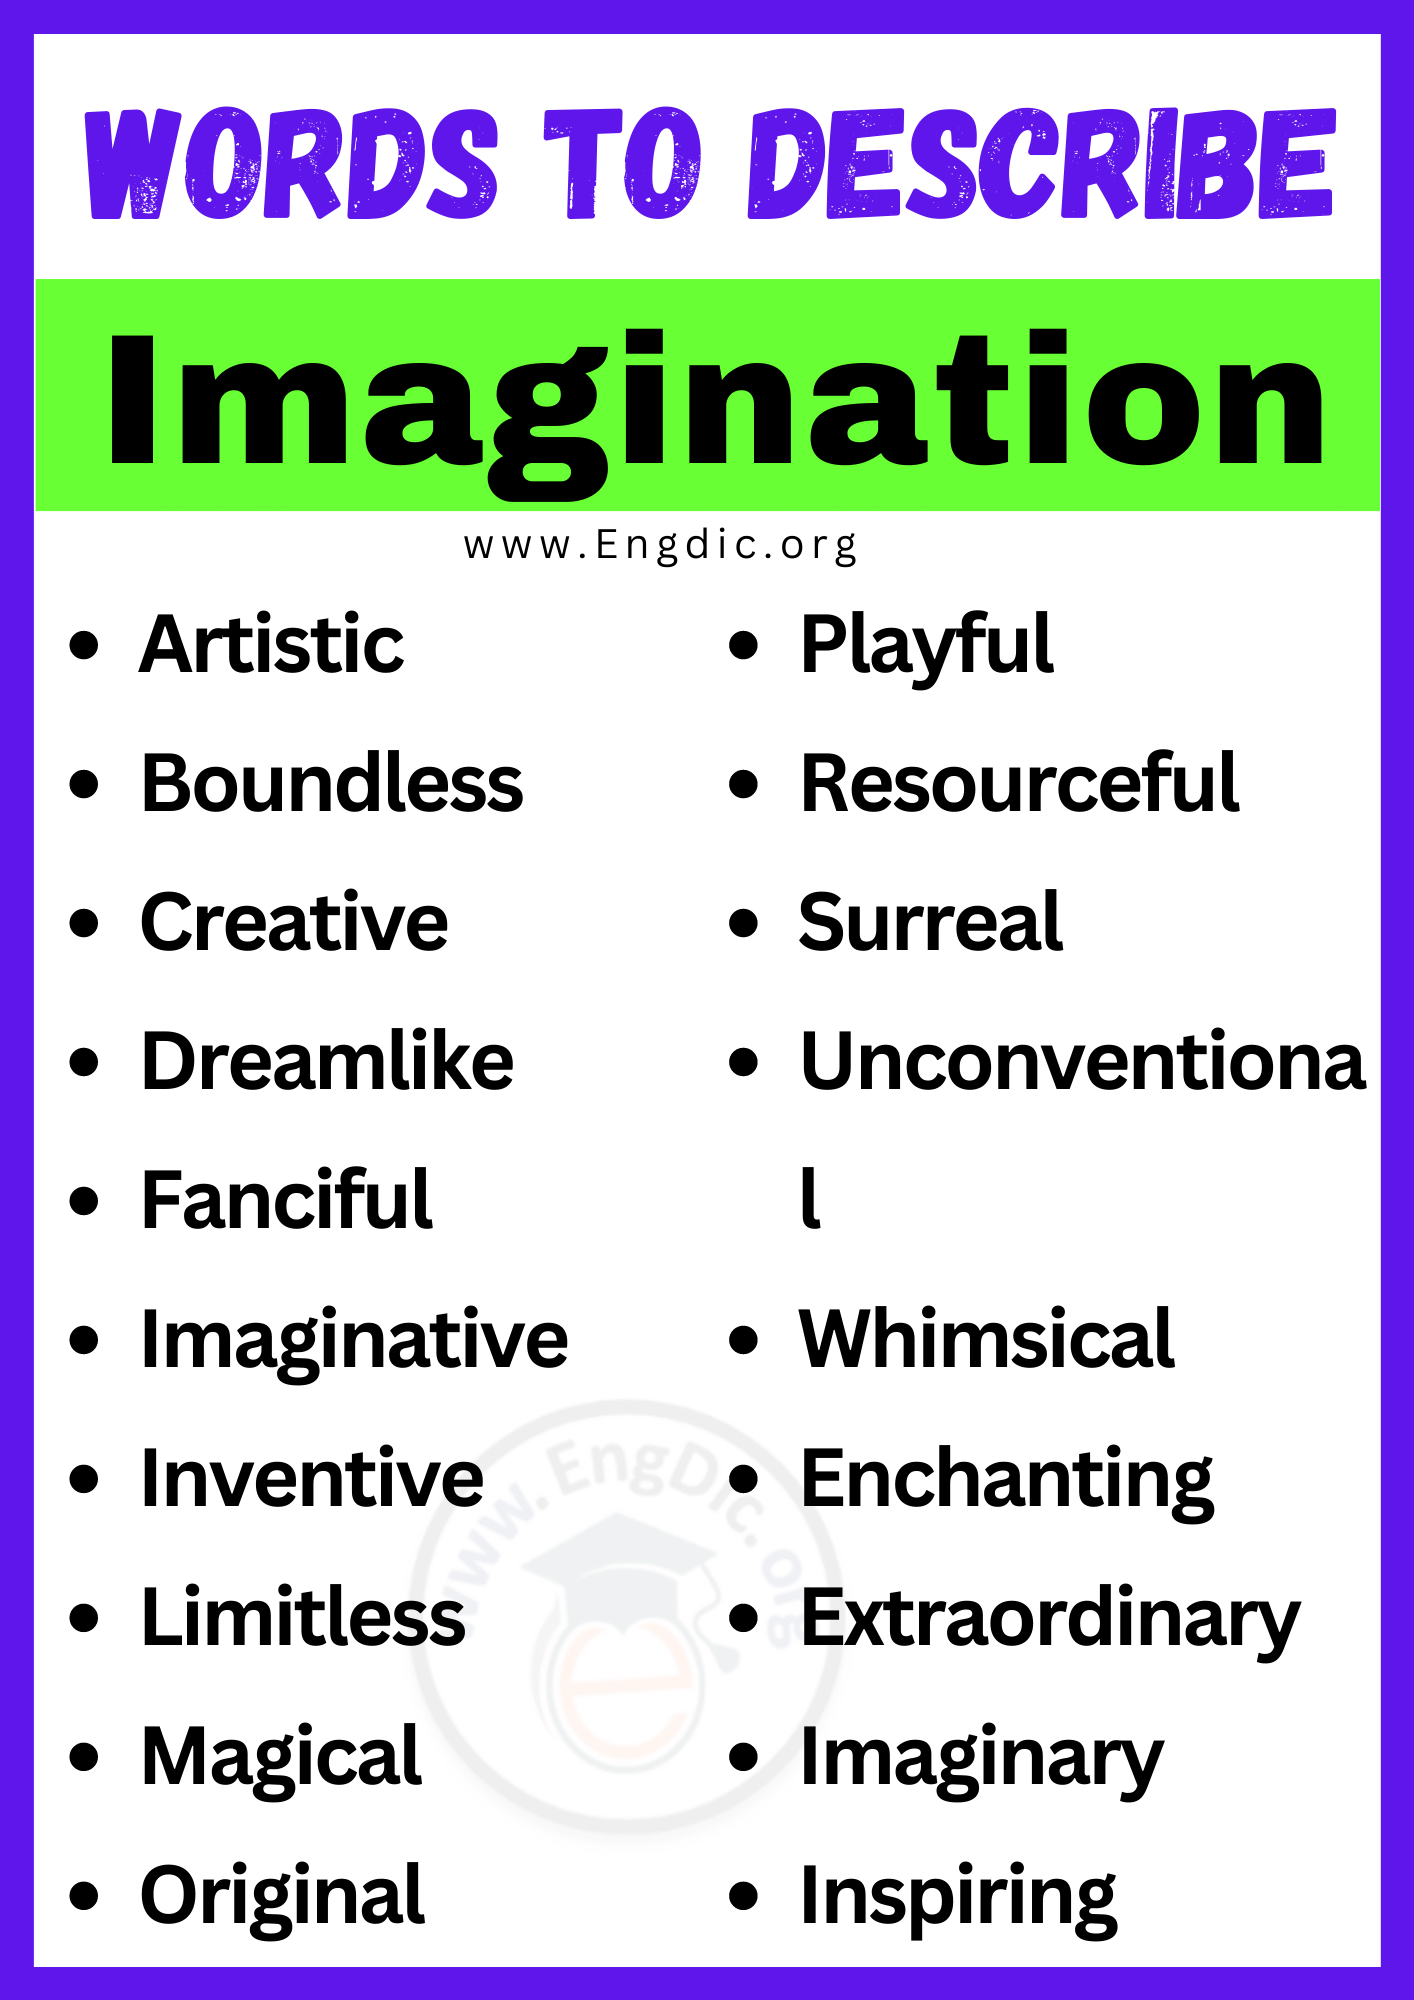 Words to Describe Imagination